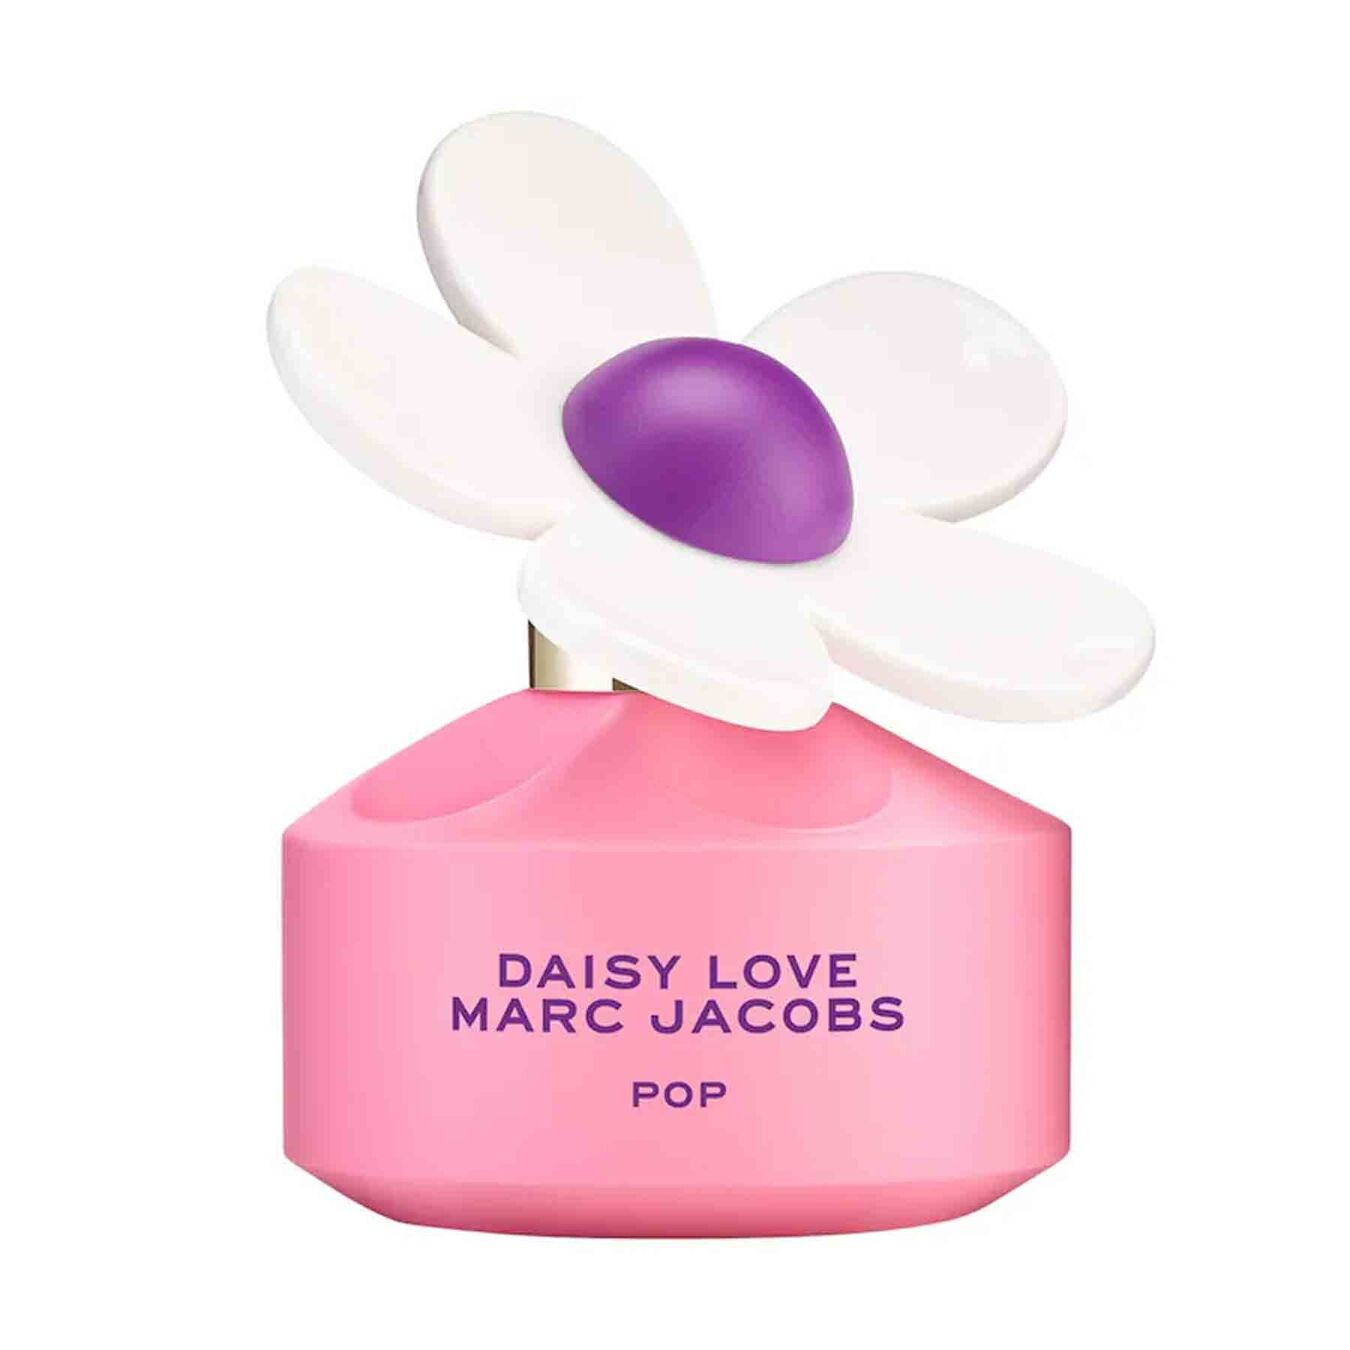 Marc Jacobs Daisy Love Pop Eau de Toilette 50ml Damen von Marc Jacobs